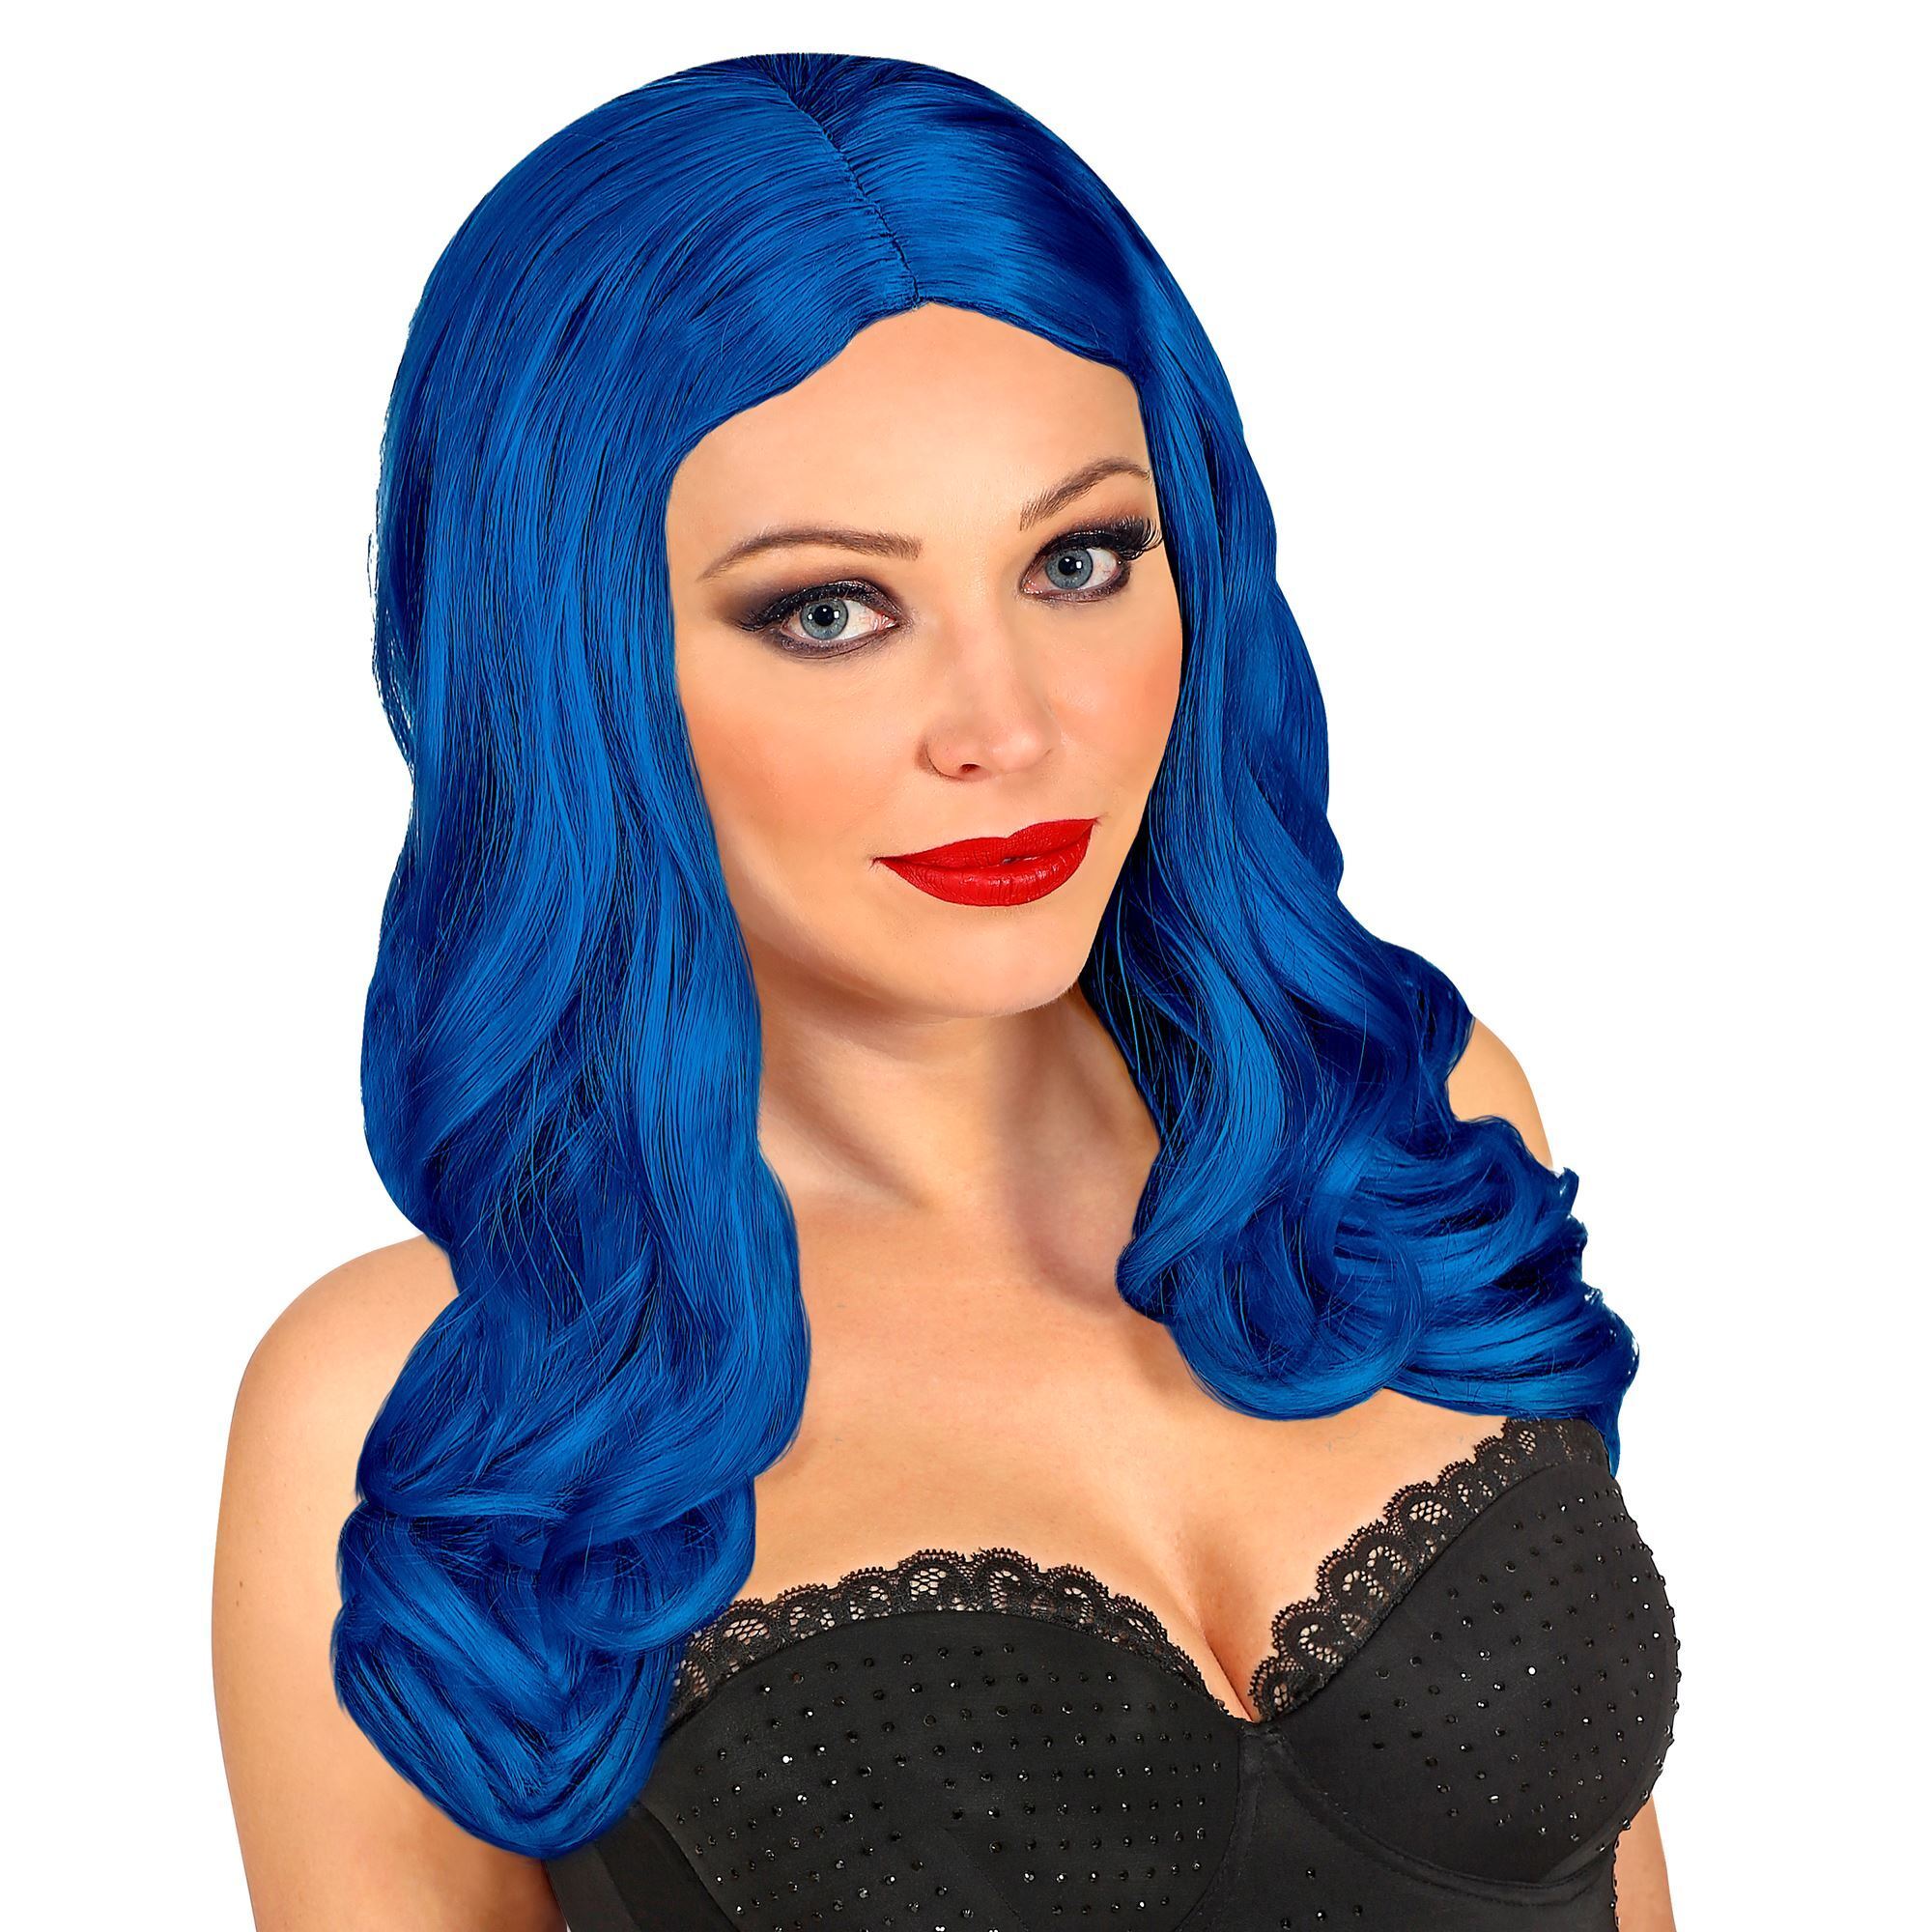 Roxy pruik blauw lang haar